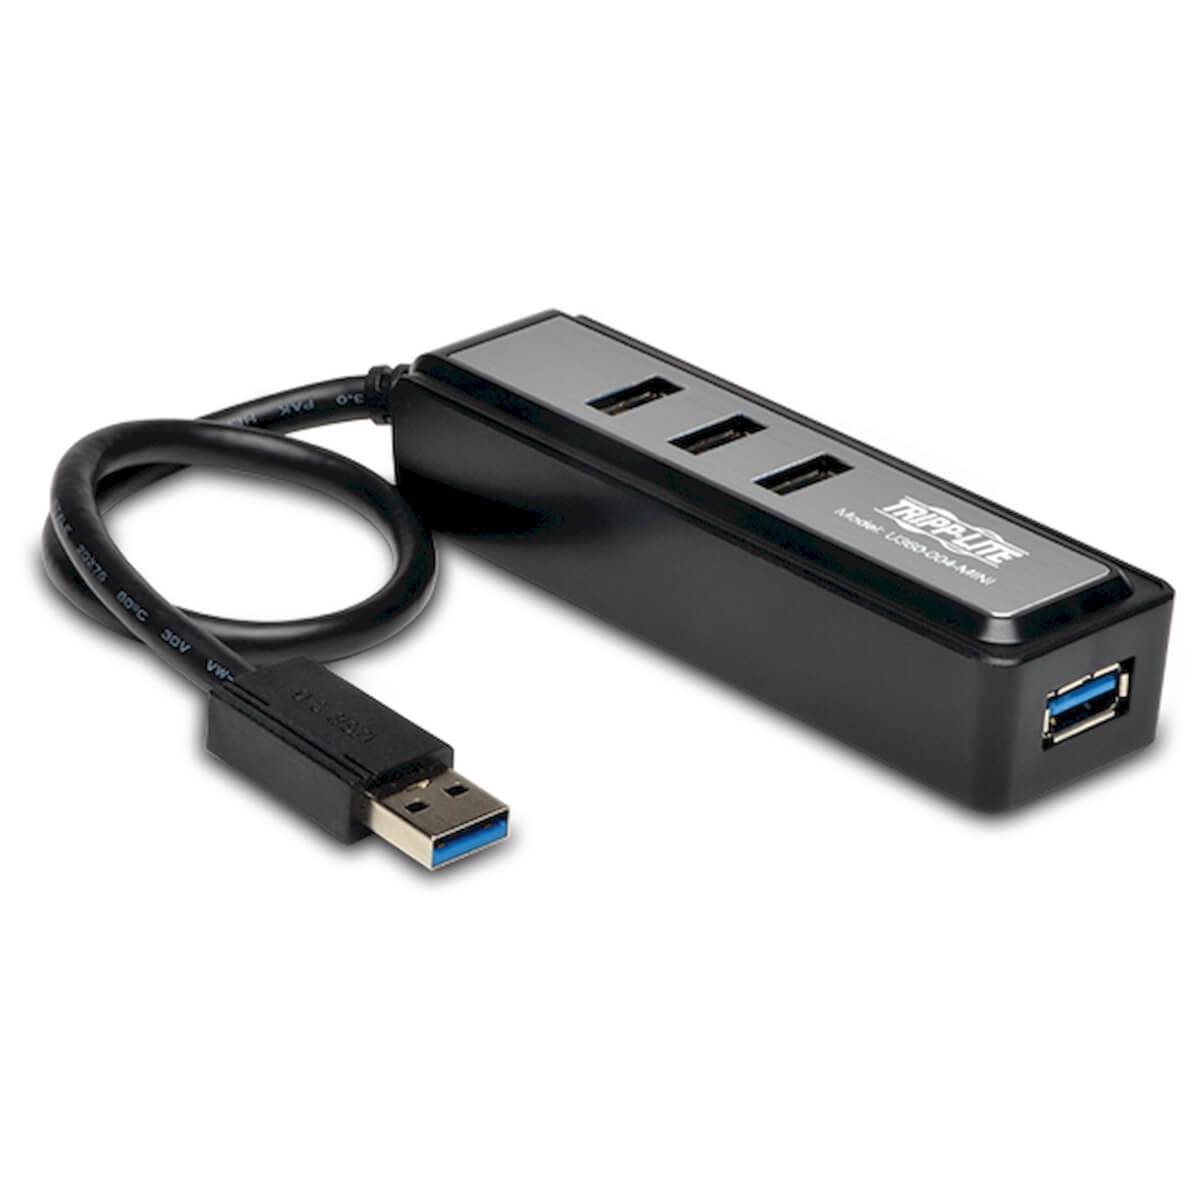 Rca Informatique - Image du produit : 4-PORT USB 3.0 PORTABLE HUB